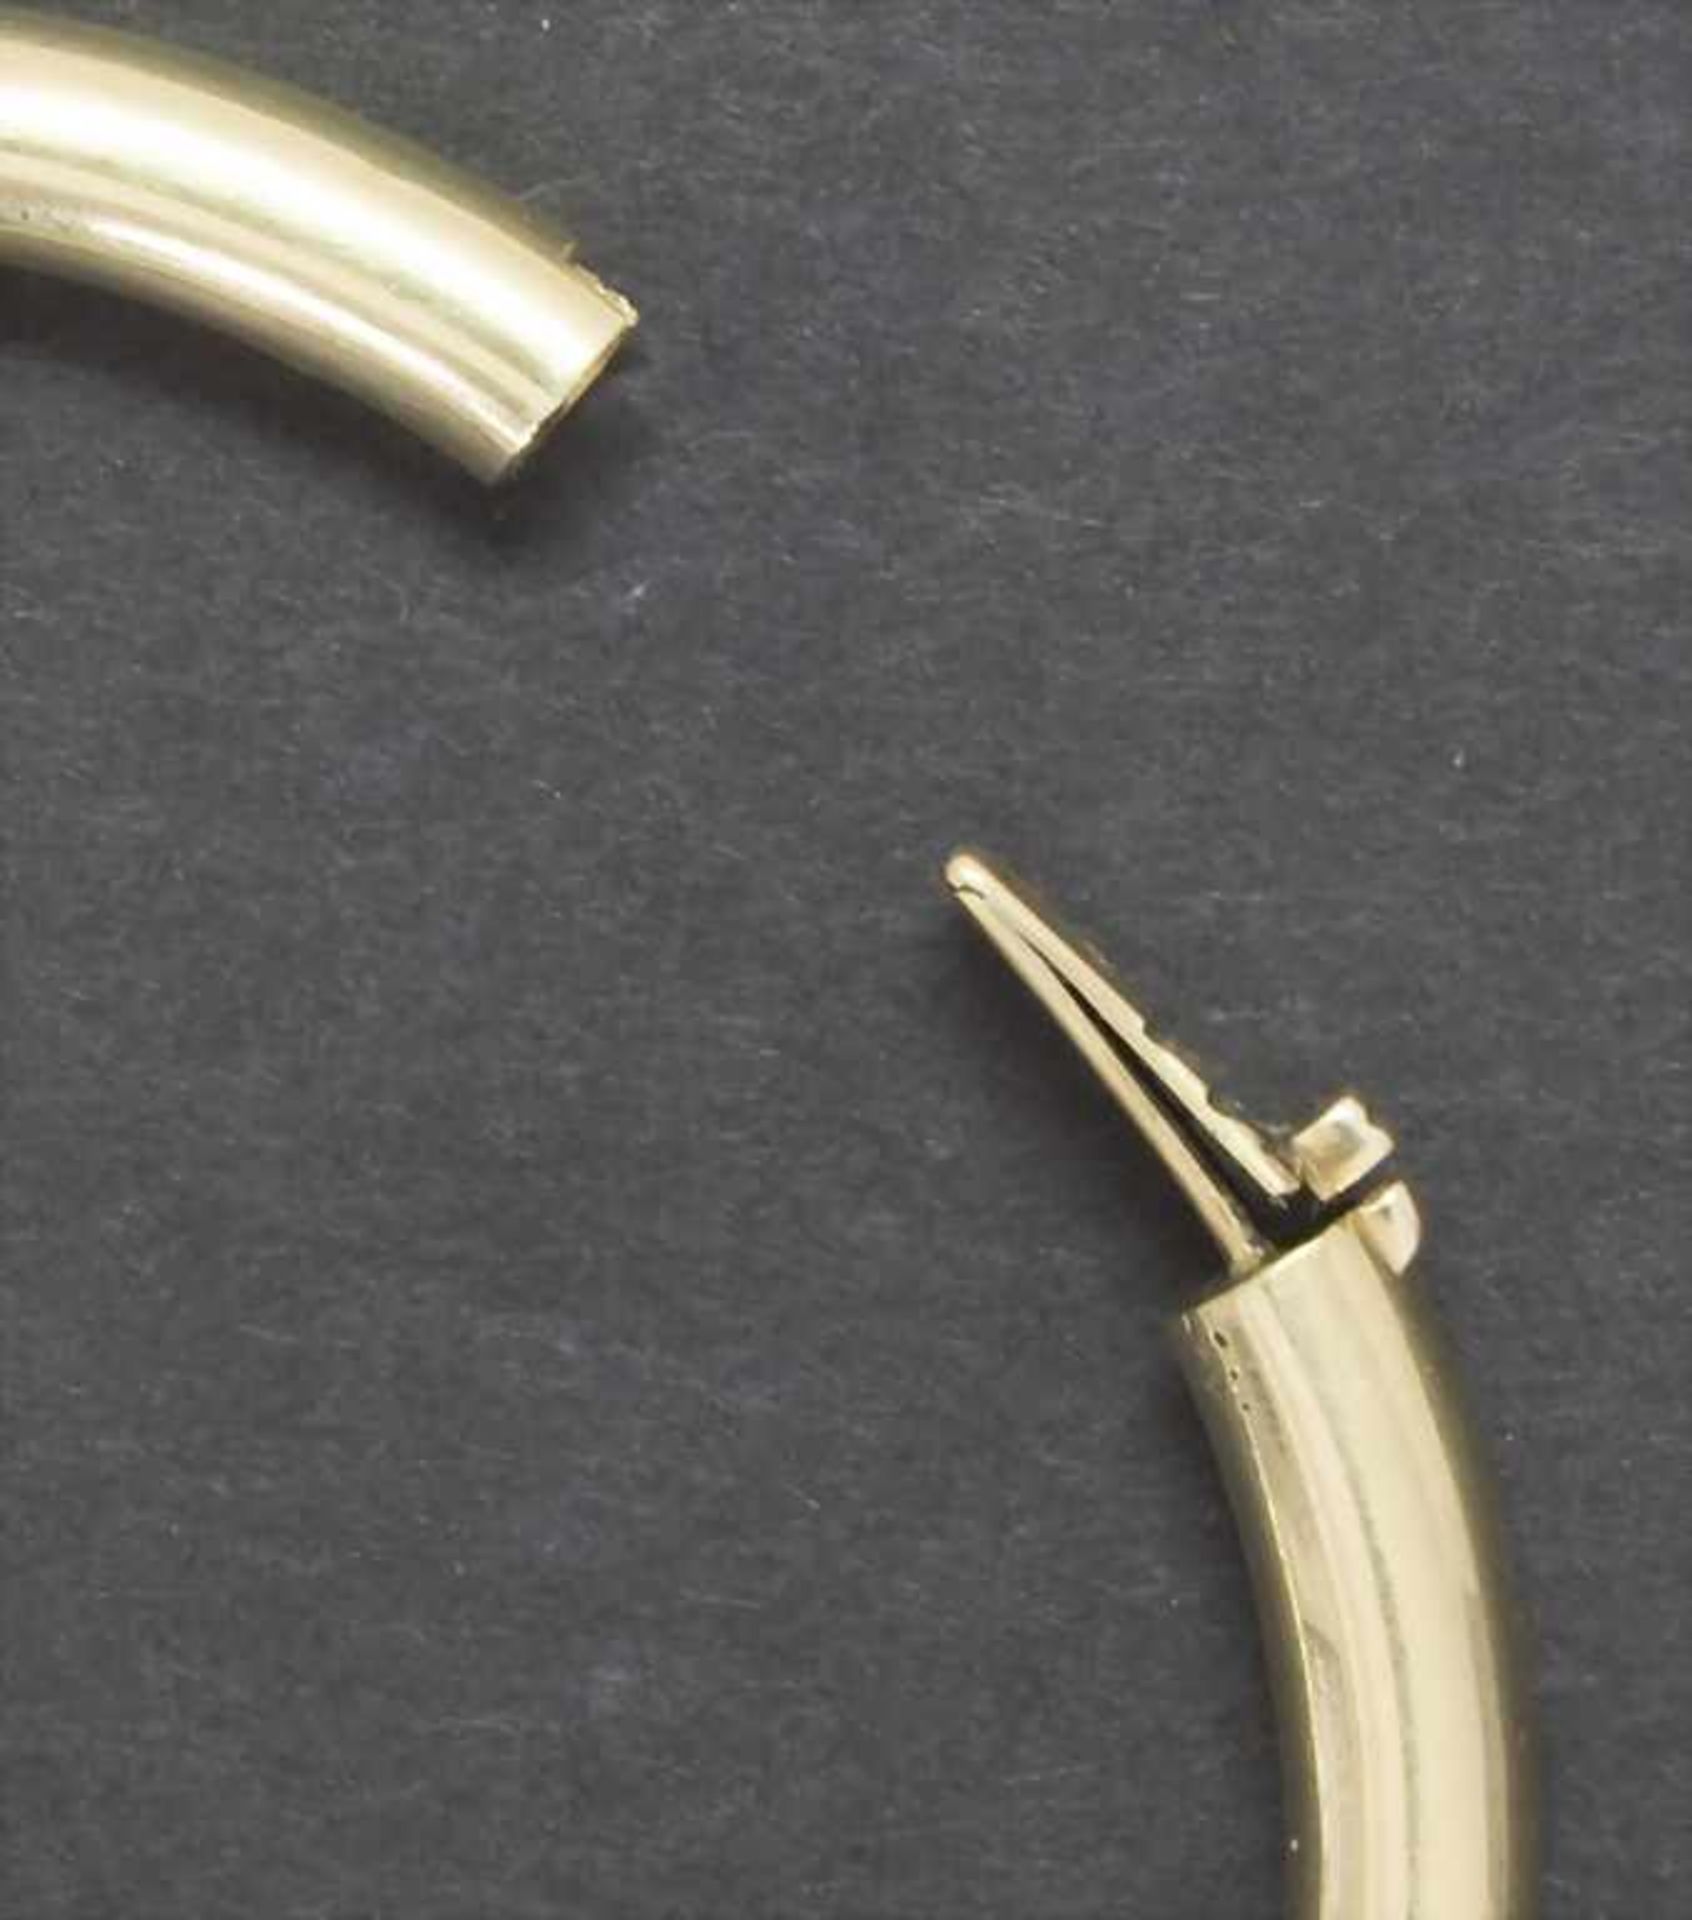 Armreif / A bracelet, 20 Jh.Material: Gelbgold Au 585/000 14 Kt,Maße: innen 50 x 60 mm, D. 5 mm, - Image 3 of 4